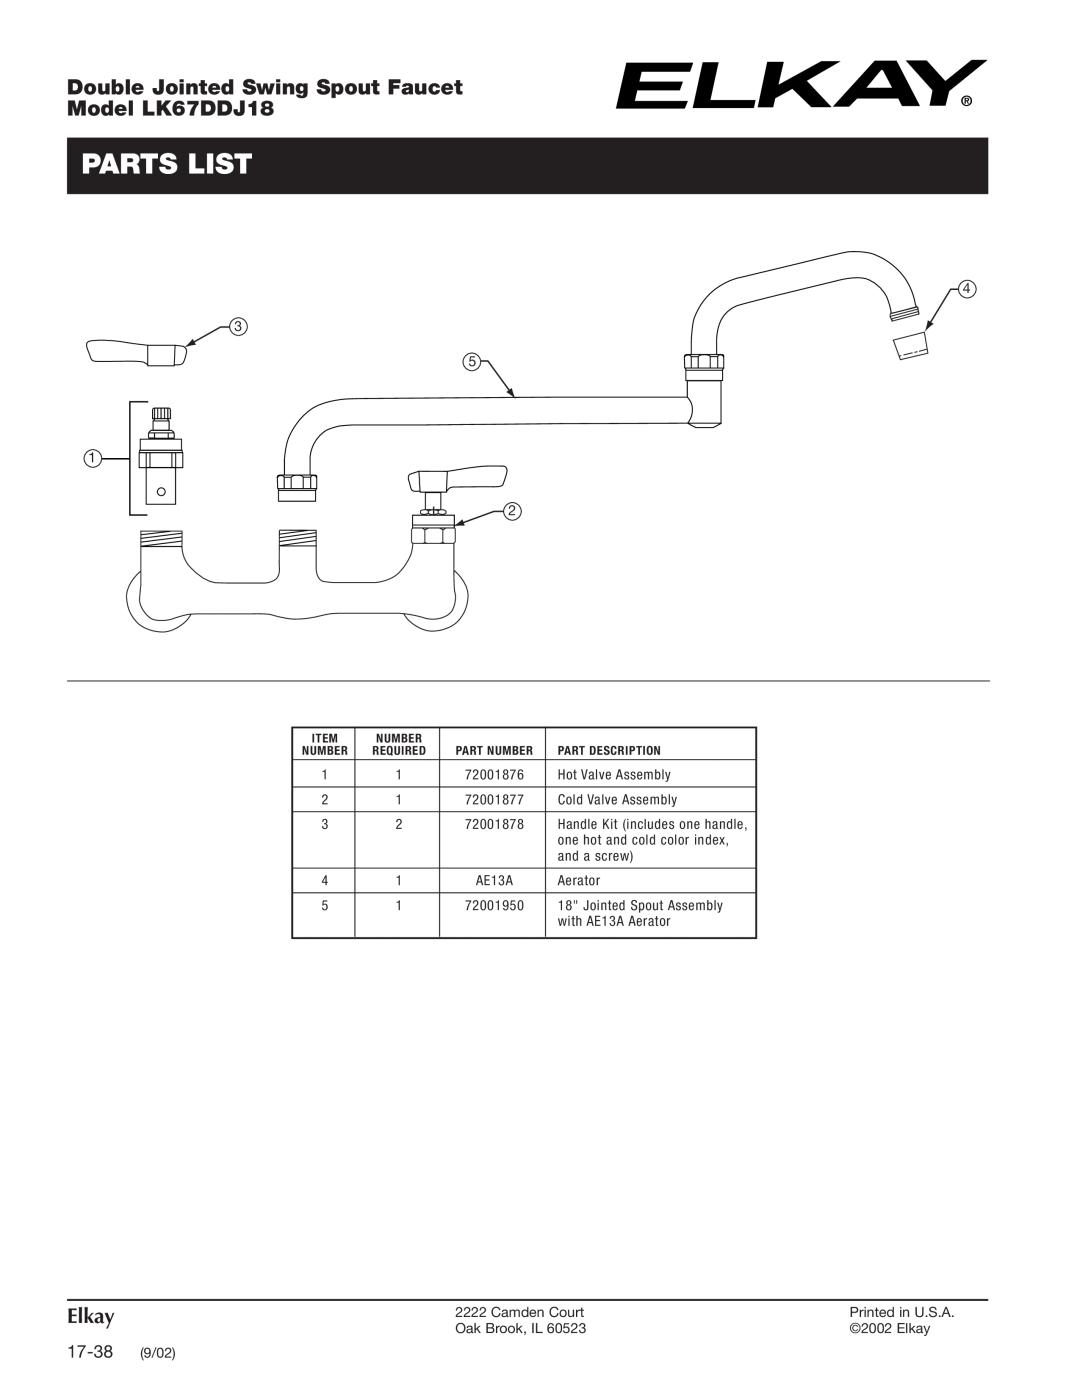 Elkay specifications Parts List, Double Jointed Swing Spout Faucet Model LK67DDJ18, 17-38 9/02, Elkay 